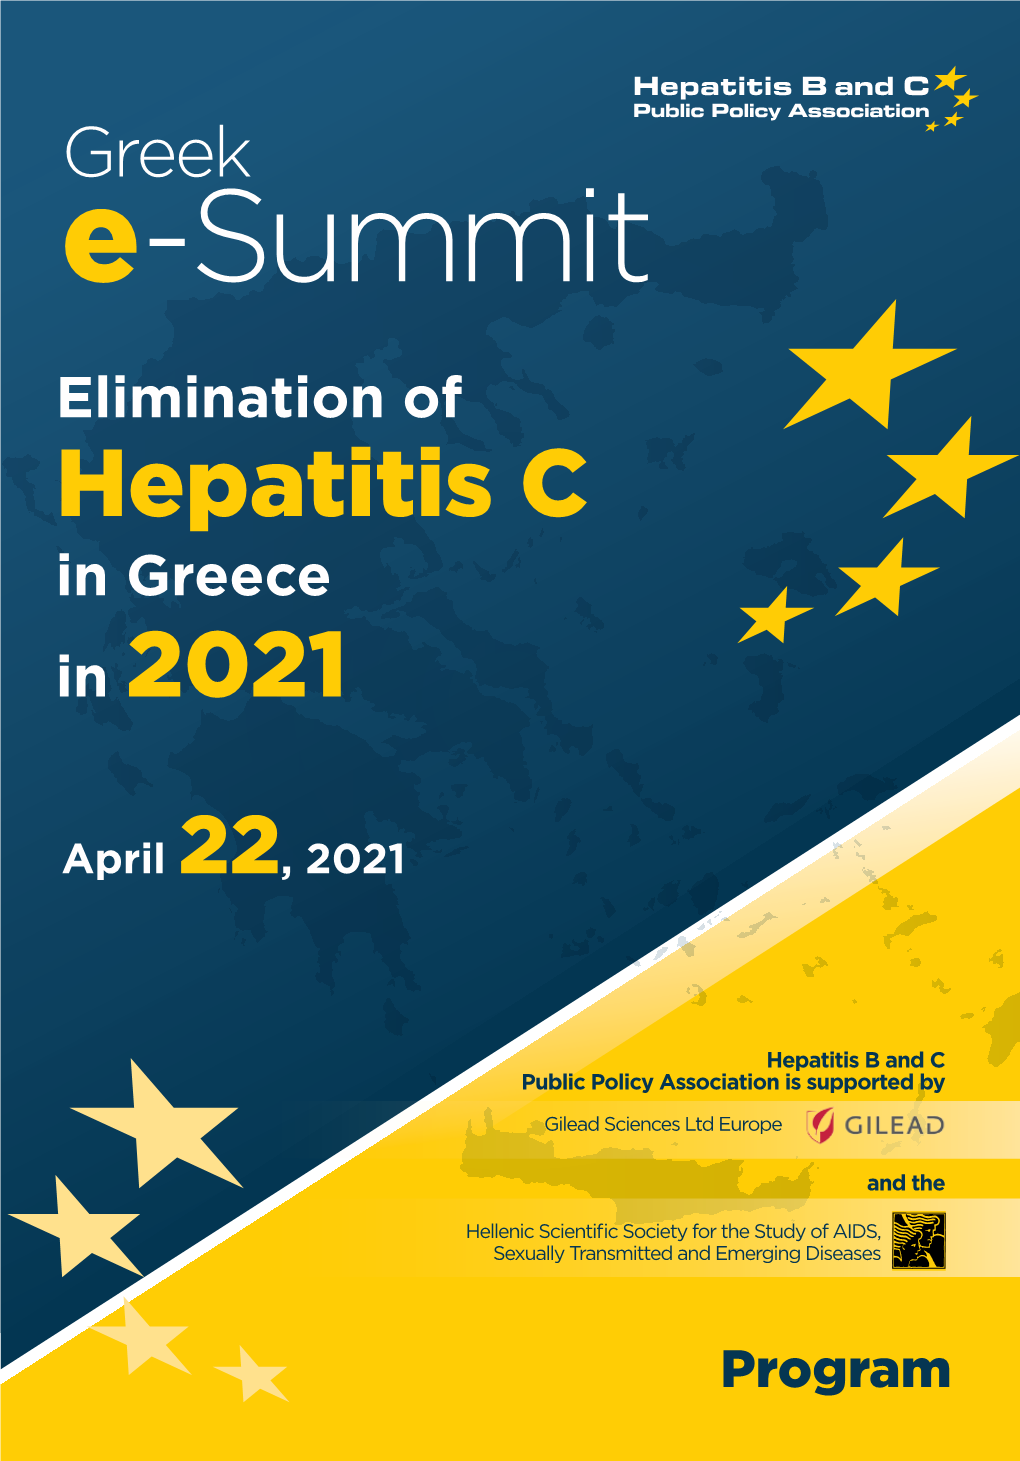 Greek E-Summit